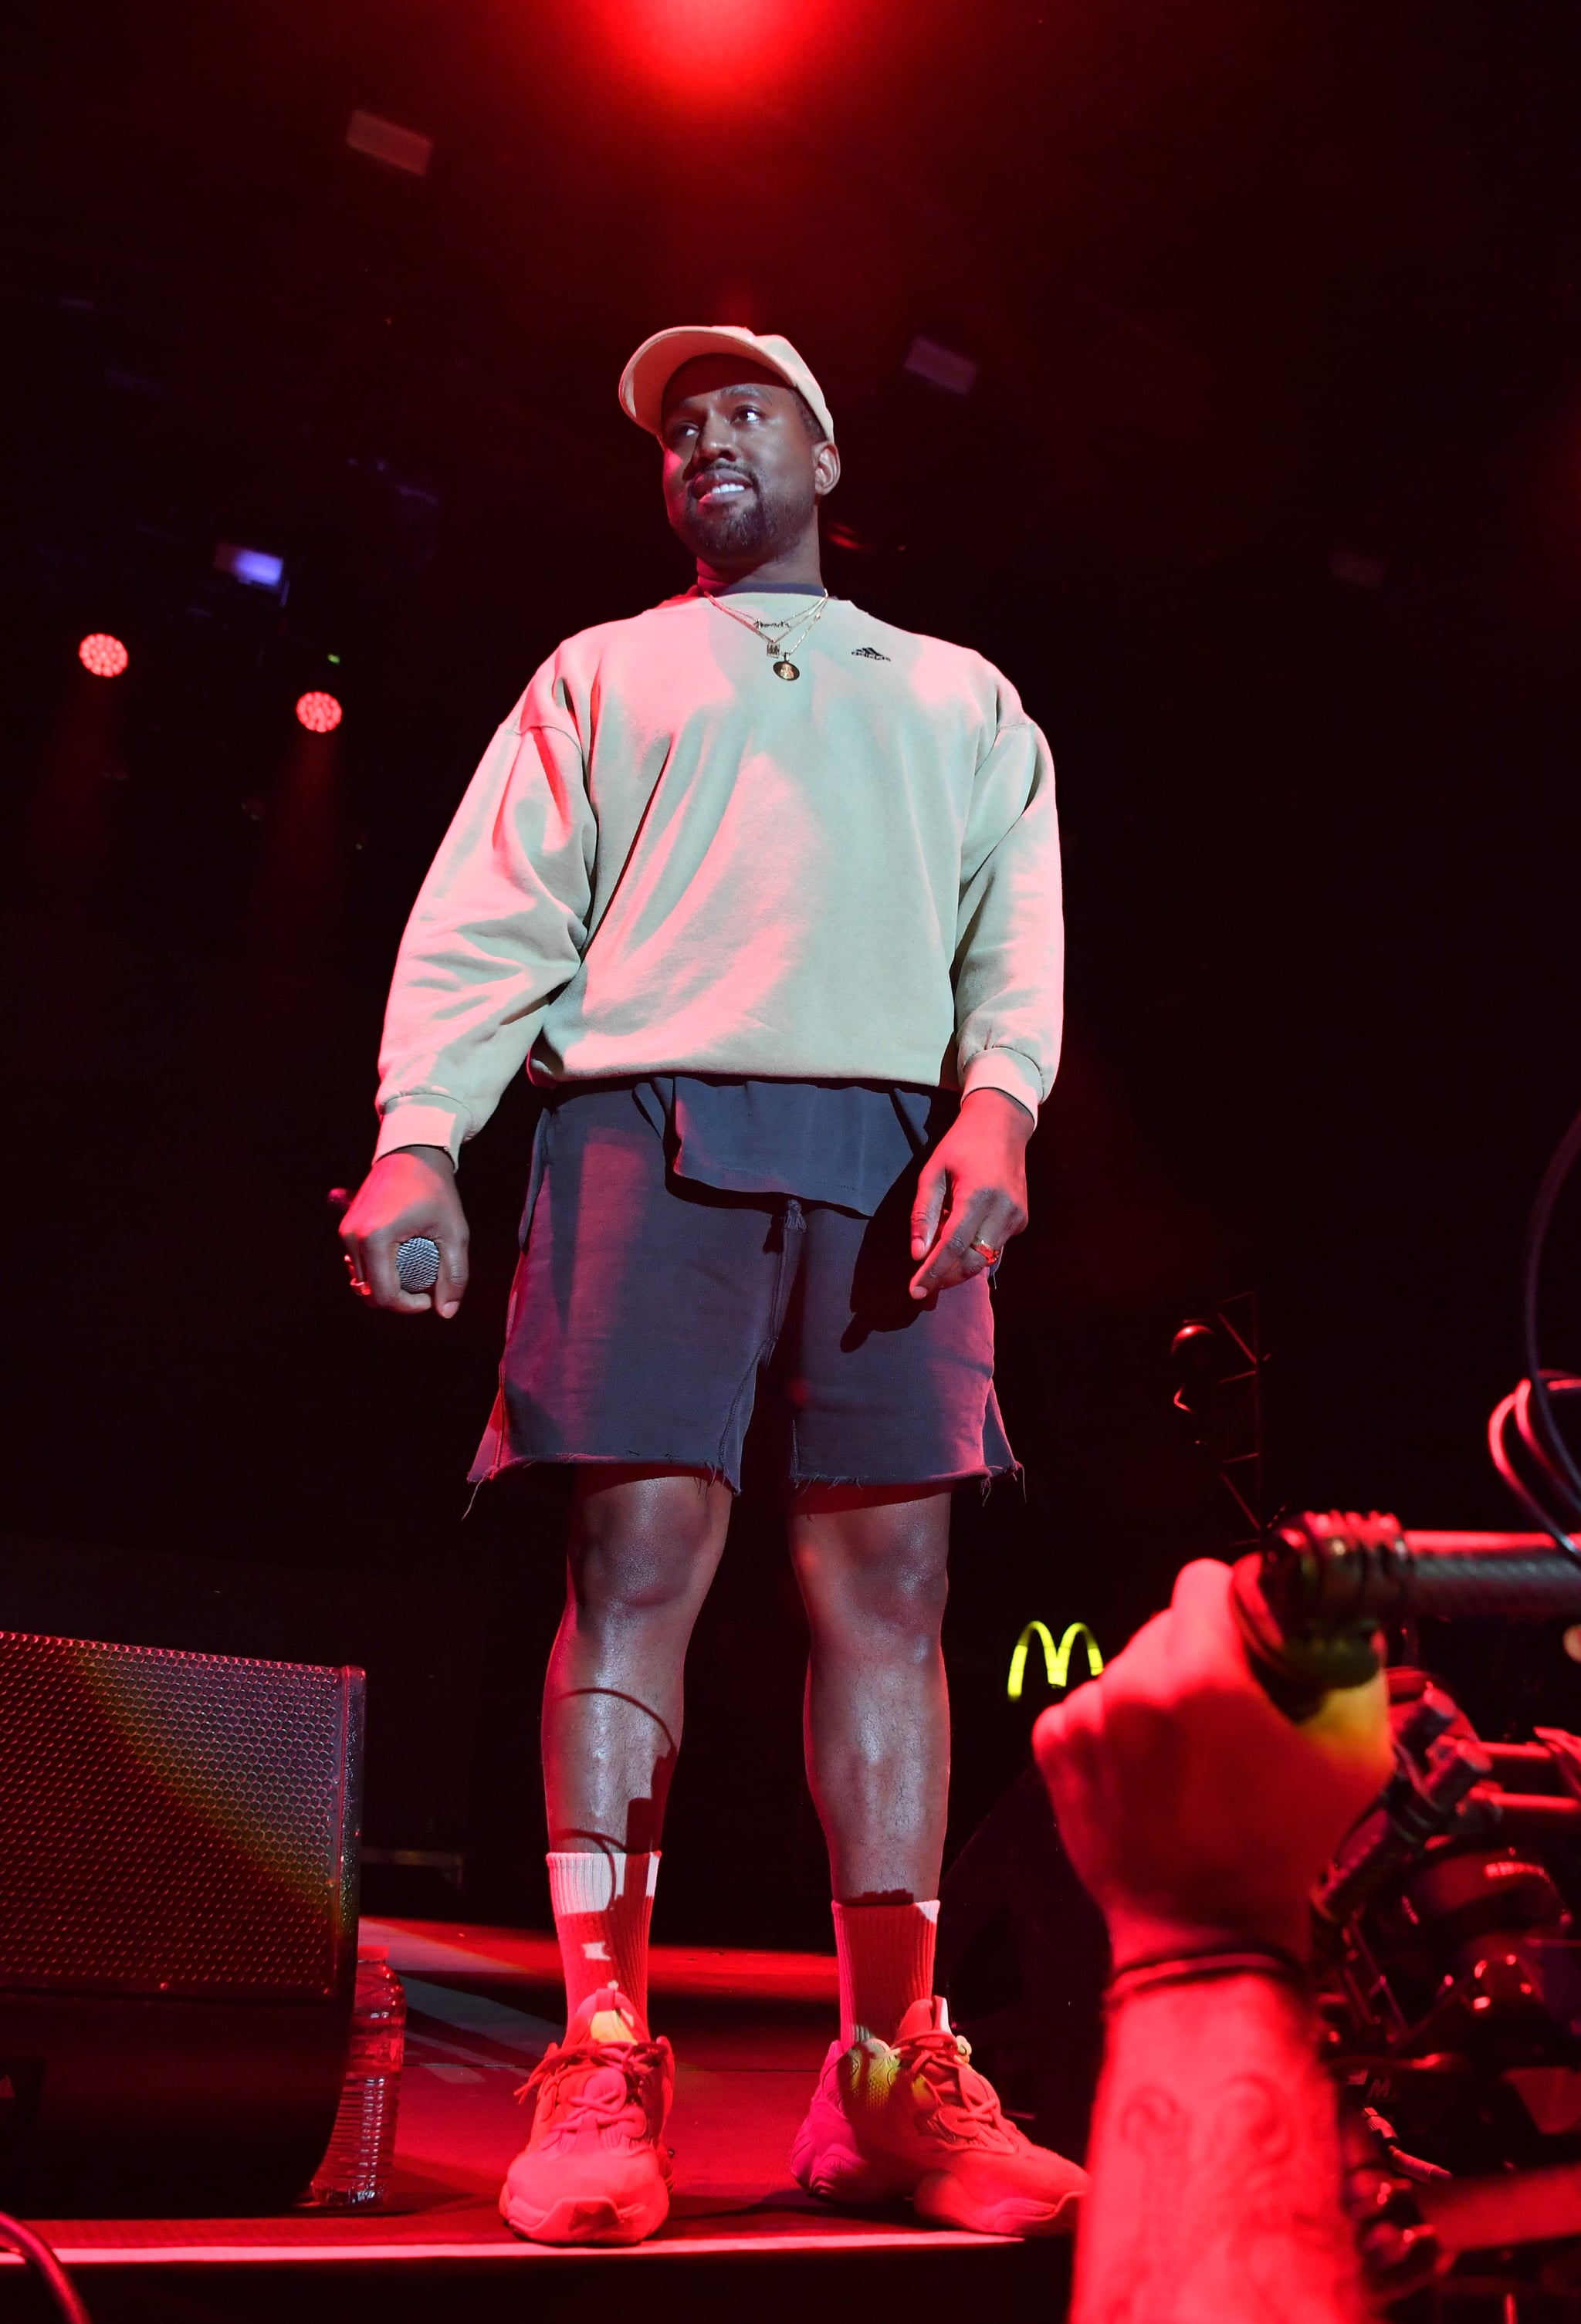 Kanye West and Kid Cudi Performance at Adidas Event | POPSUGAR Celebrity UK